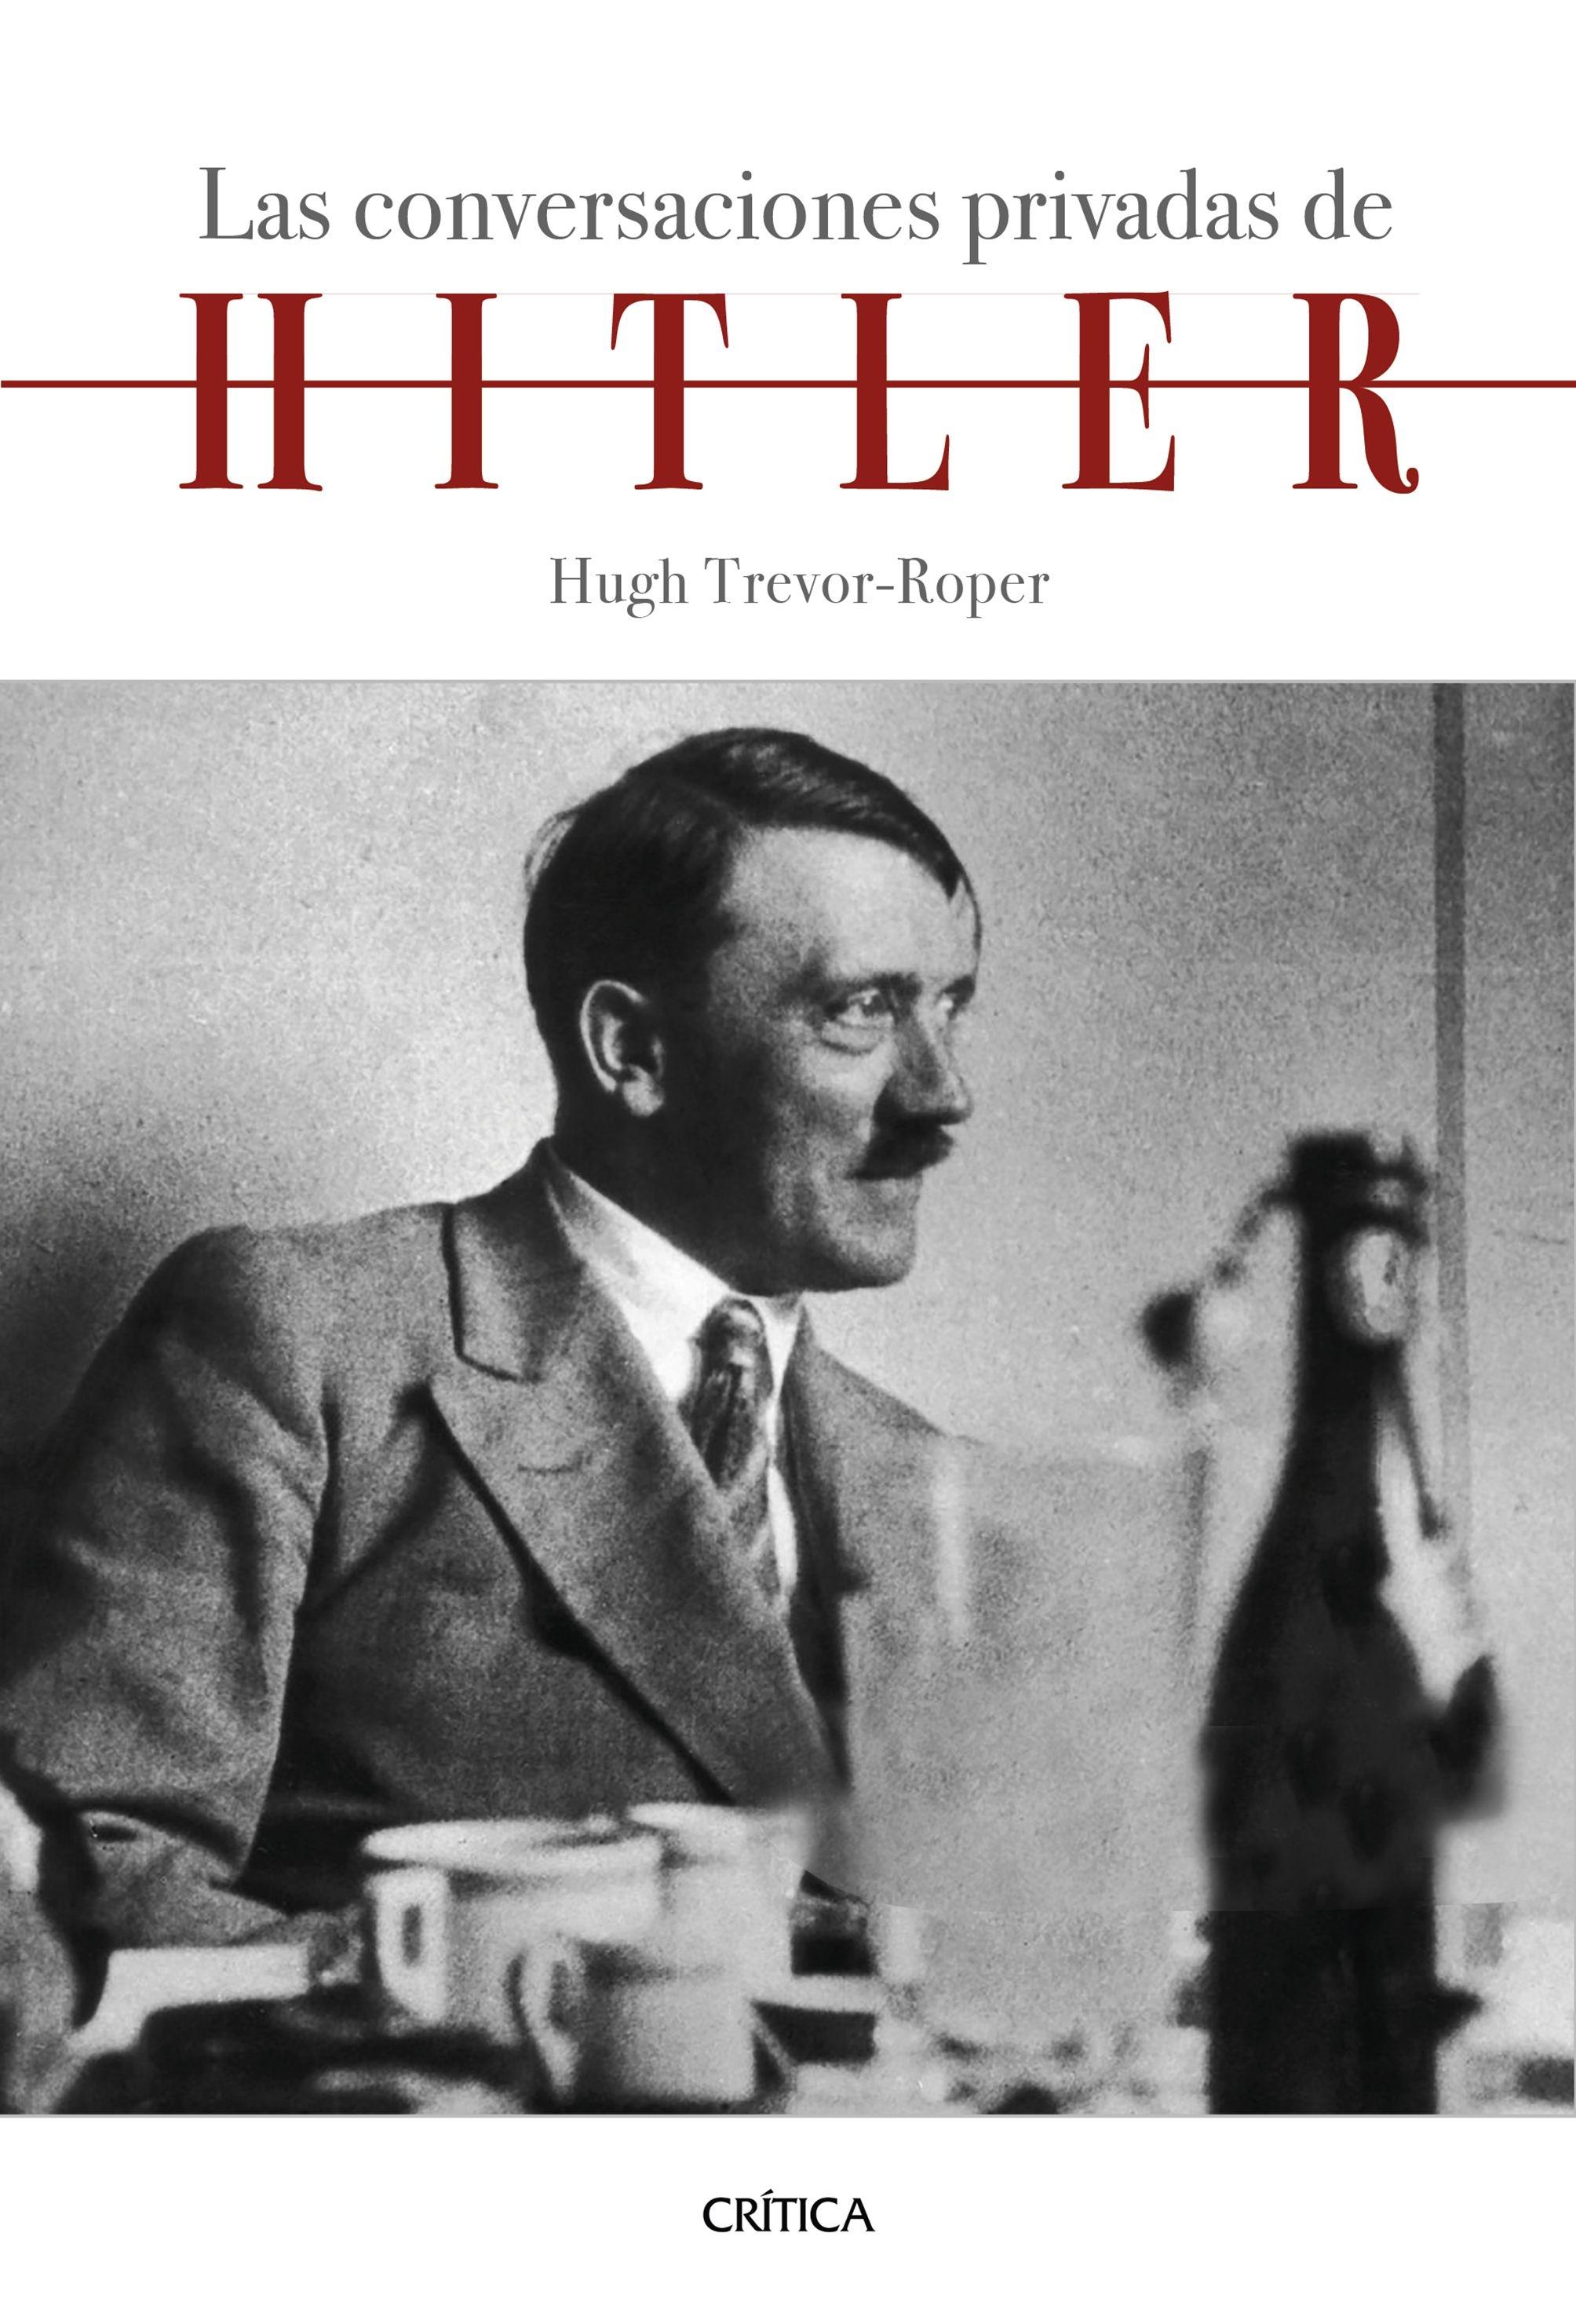 Las conversaciones privadas de Hitler "Introducción de Hugh Trevor-Roper". 